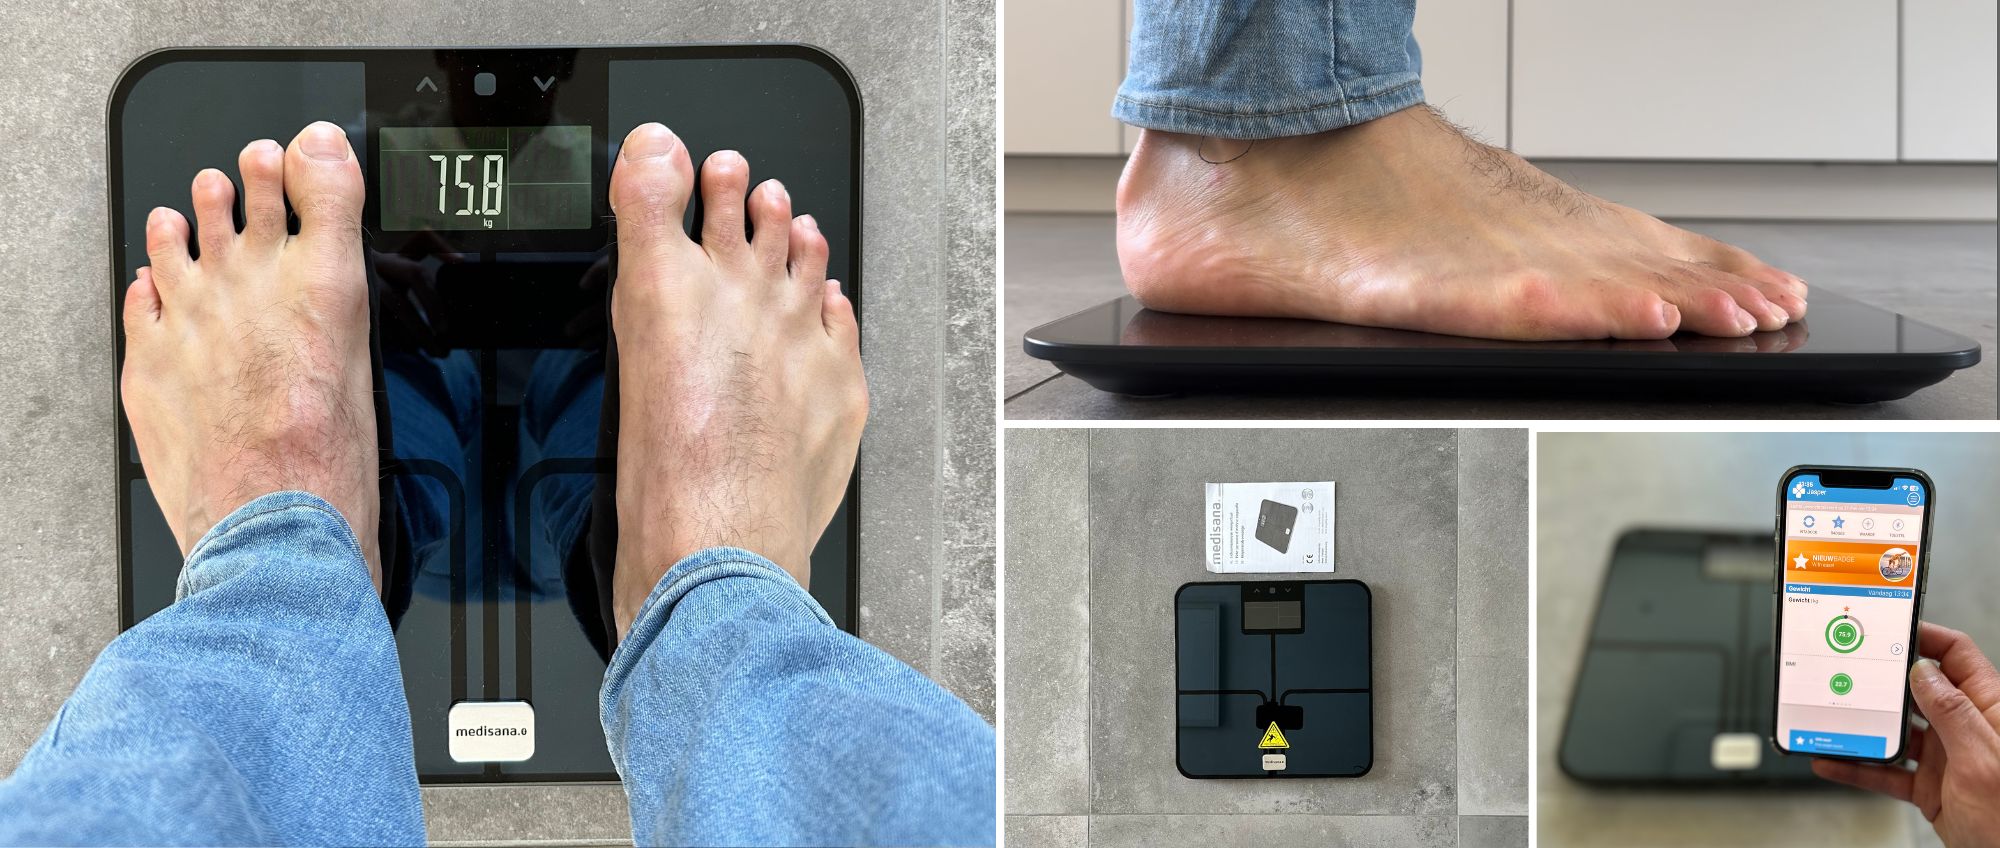 Een verzameling foto's waarop de voeten van een persoon op een digitale schaal te zien zijn.